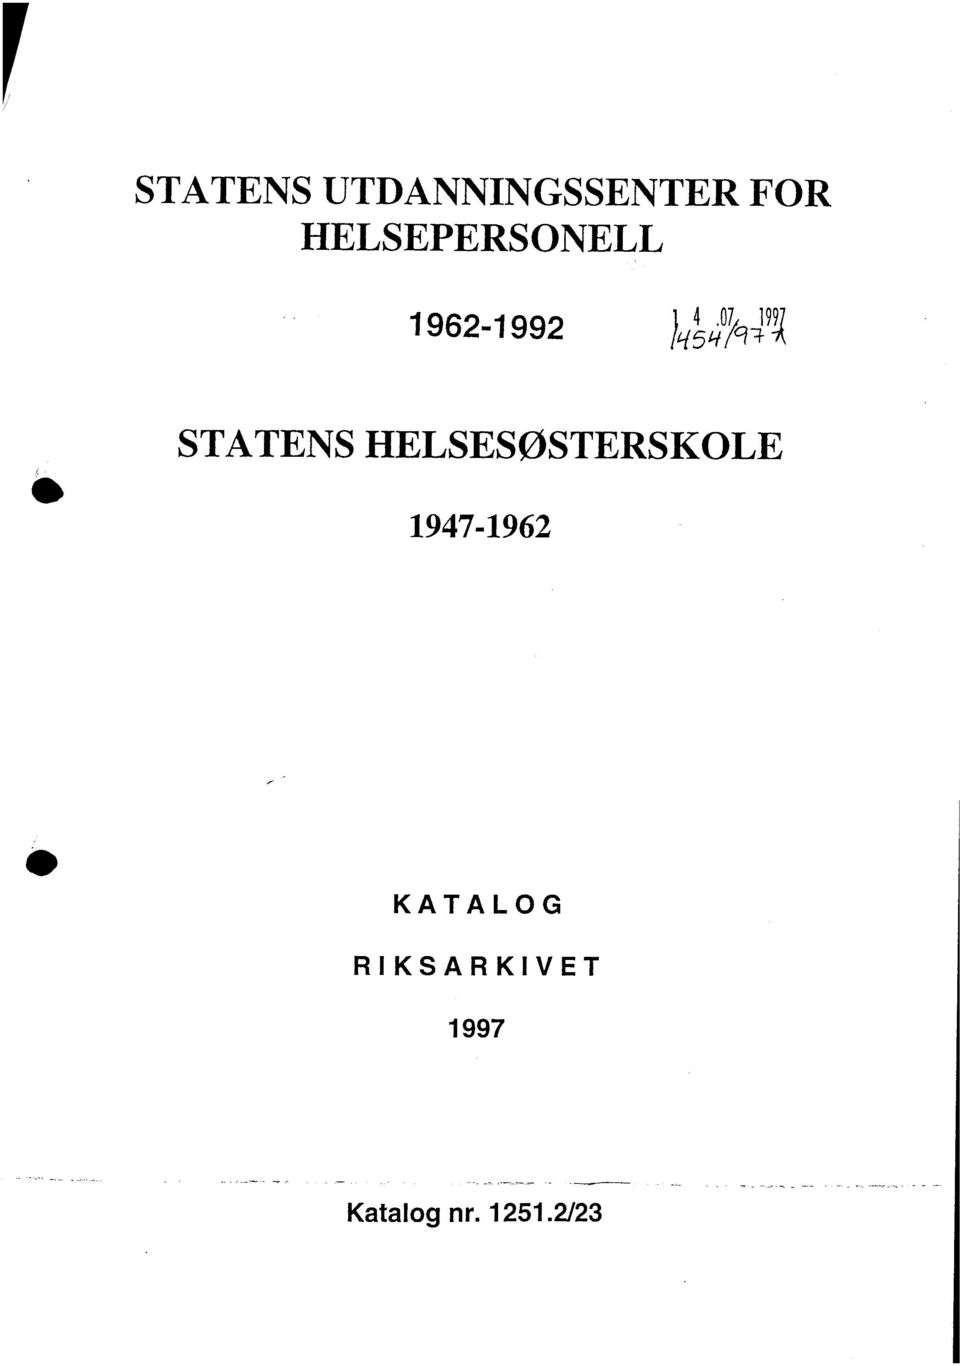 STATENS HELSESØSTERSKOLE 1947-1962